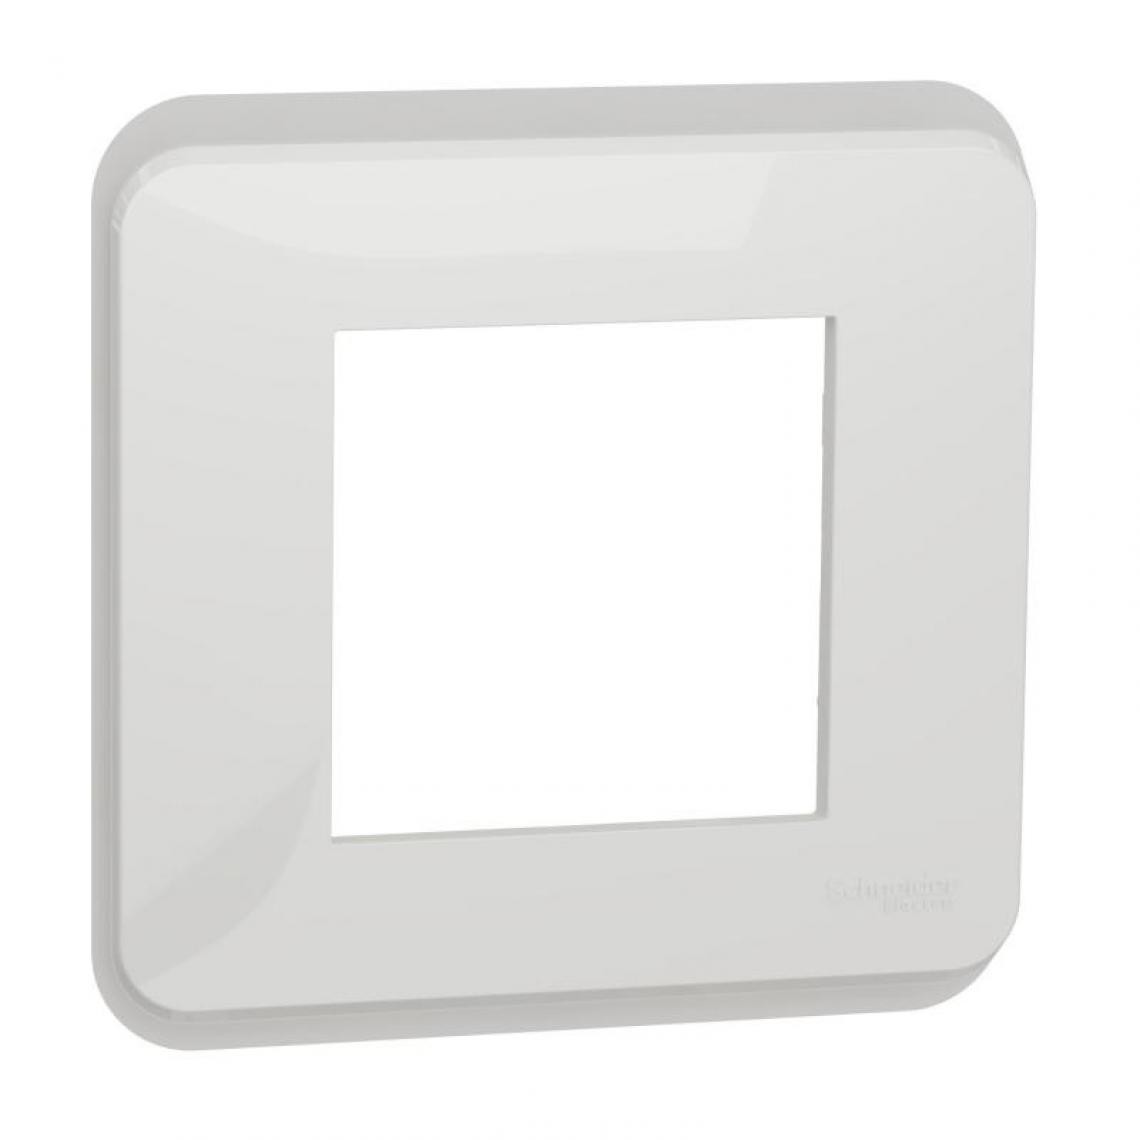 Schneider - Plaque de finition Unica 3 postes blanc - Interrupteurs et prises étanches